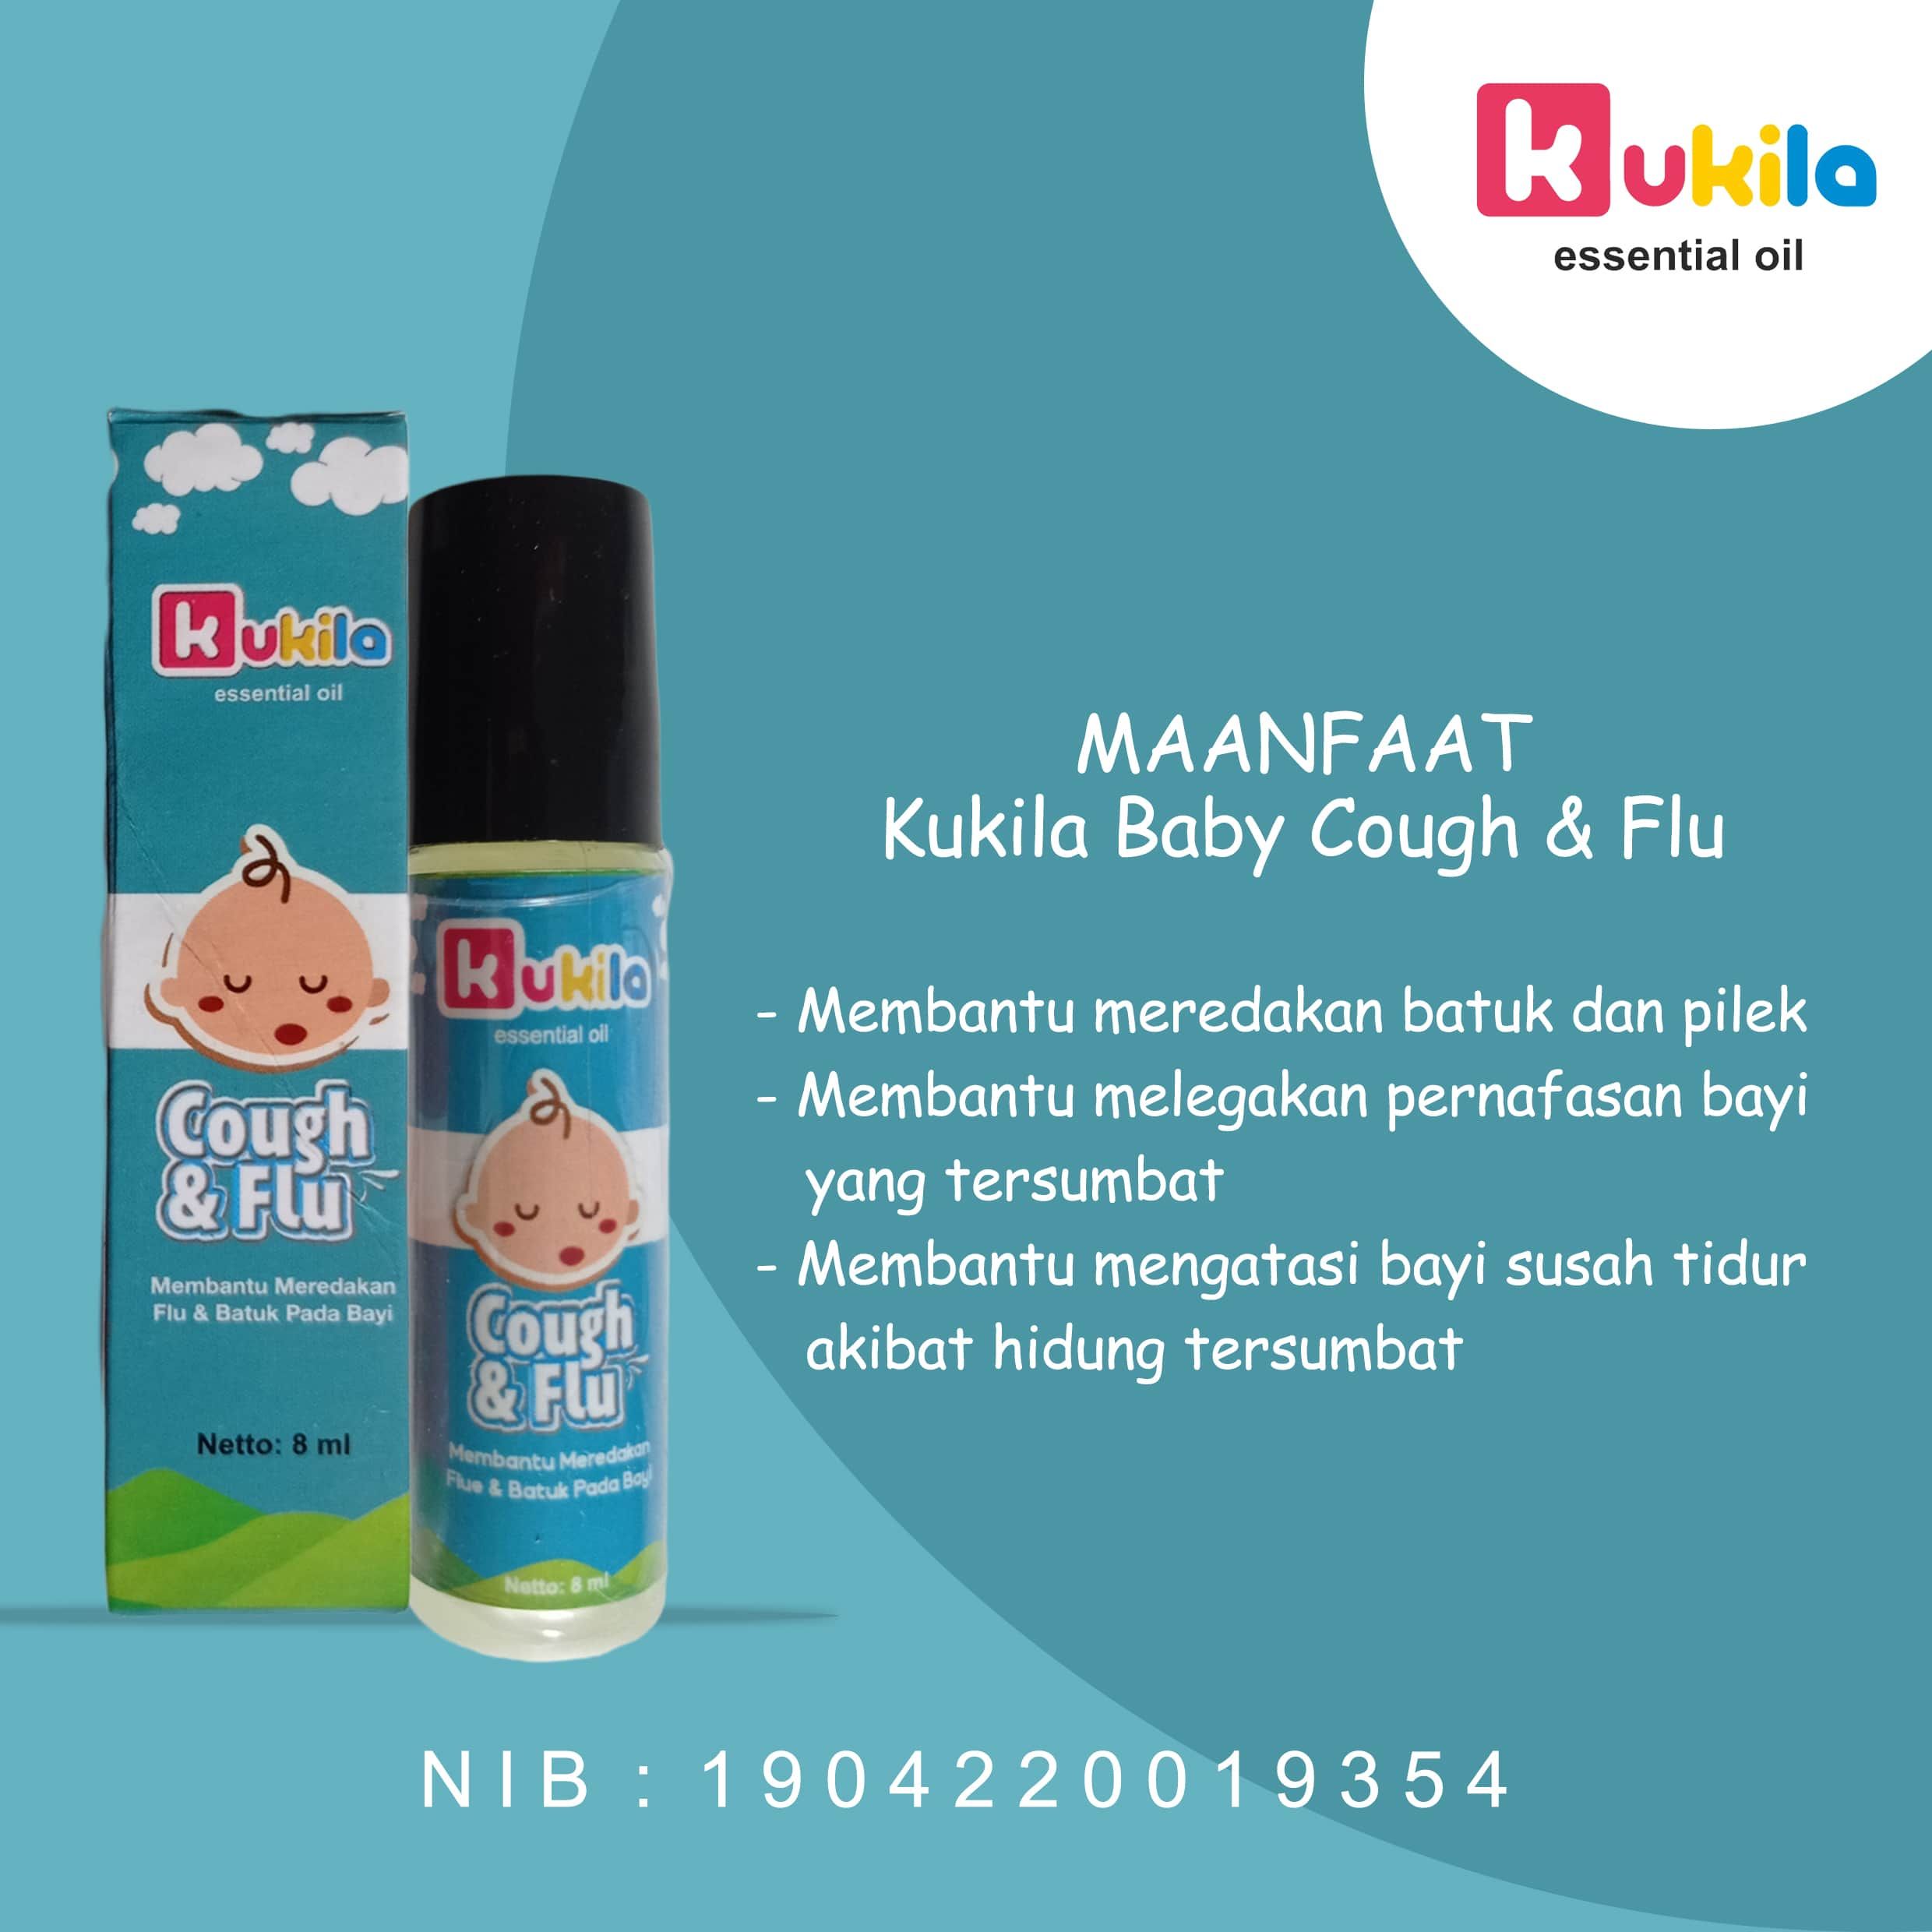 Kukila Essential Oil Baby Fever Drop 1 pcs dan Cough & Flu 4 pcs - 2